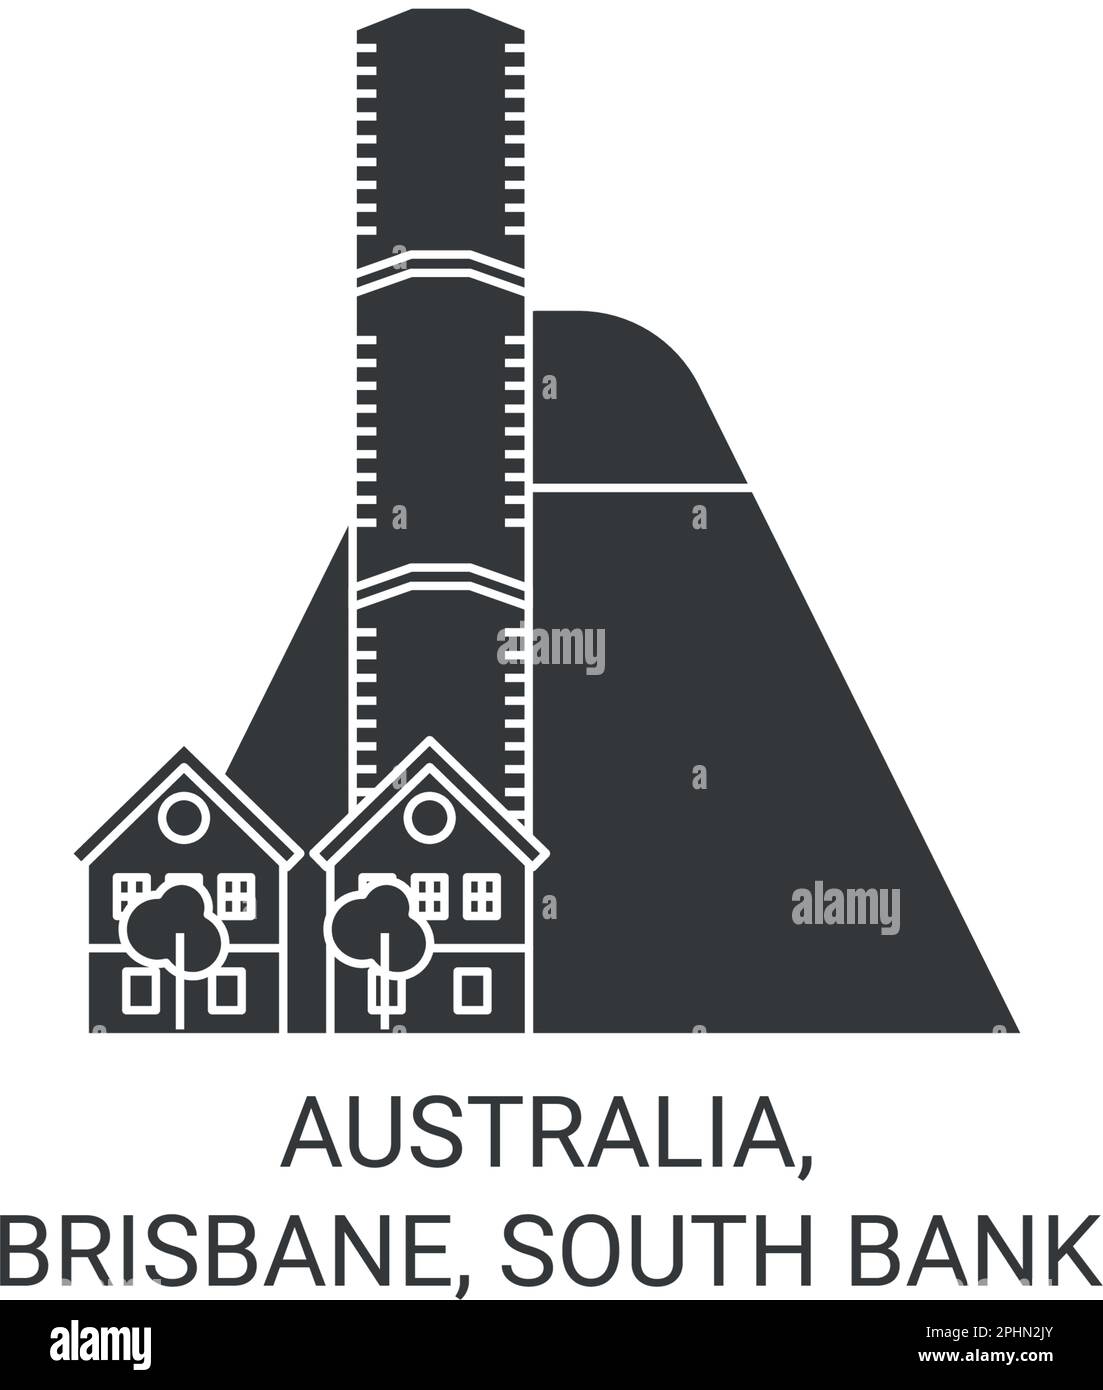 Australien, Brisbane, South Bank Reise-Wahrzeichen-Vektordarstellung Stock Vektor